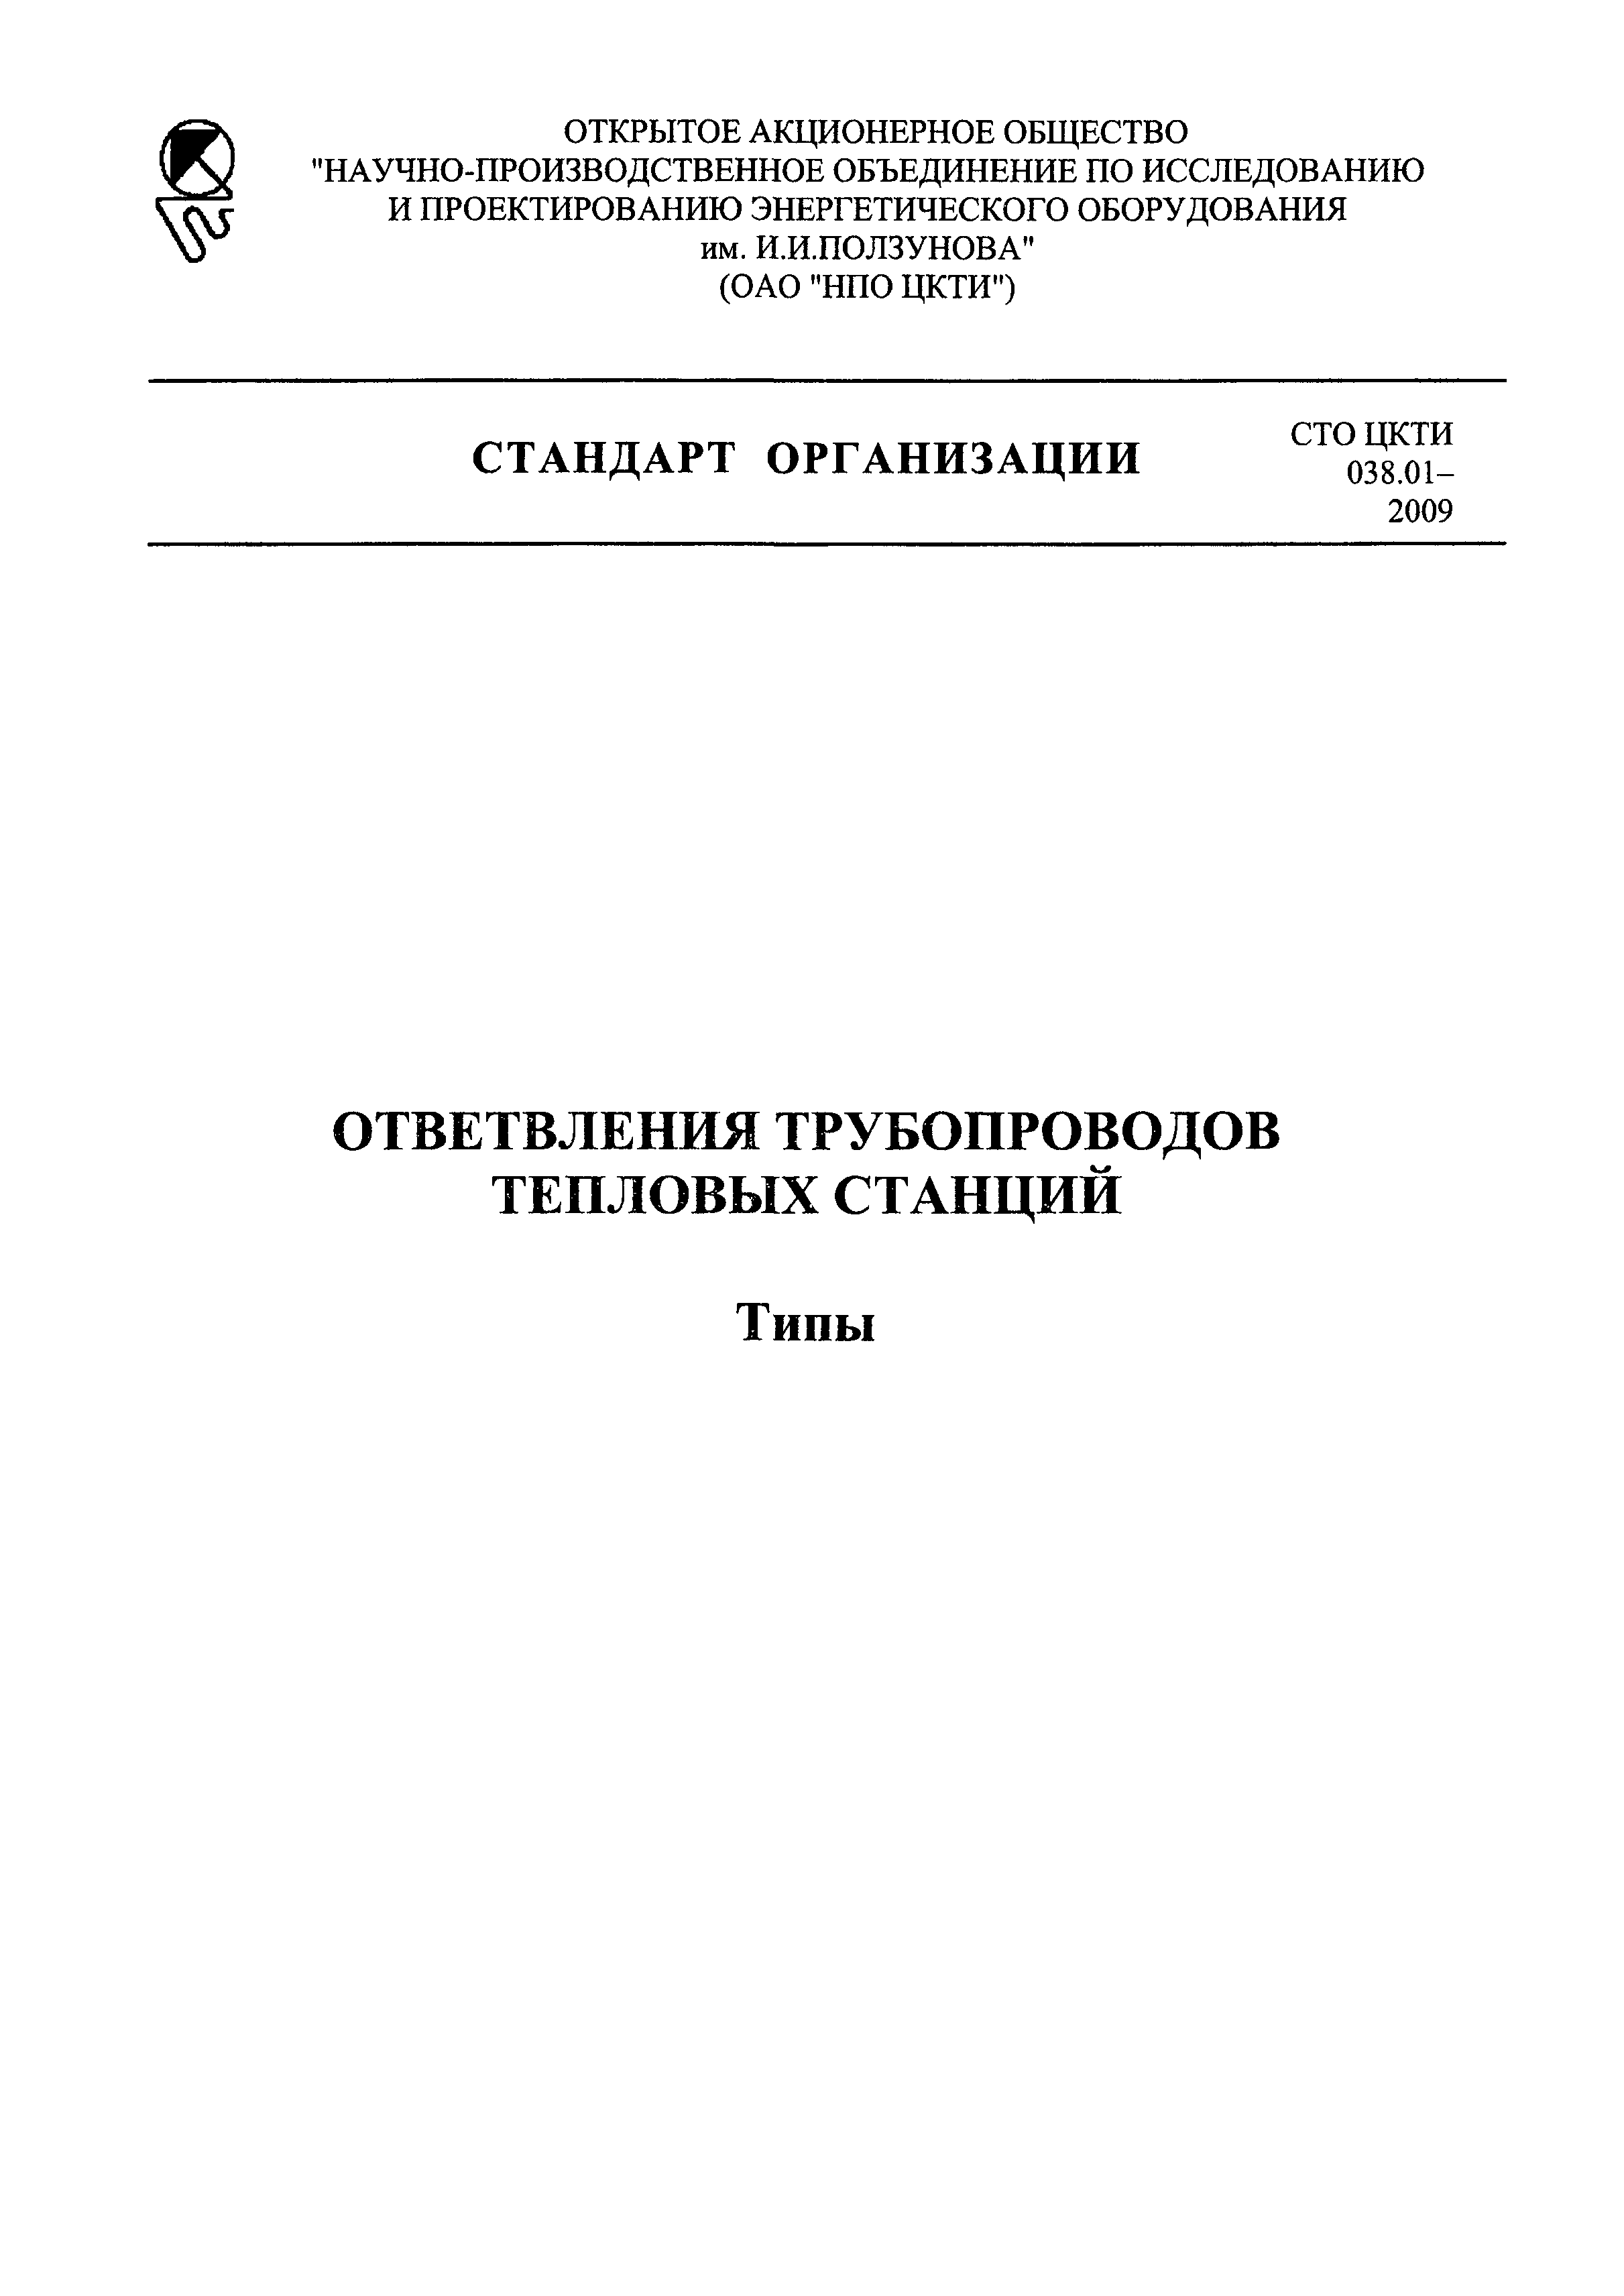 СТО ЦКТИ 038.01-2009